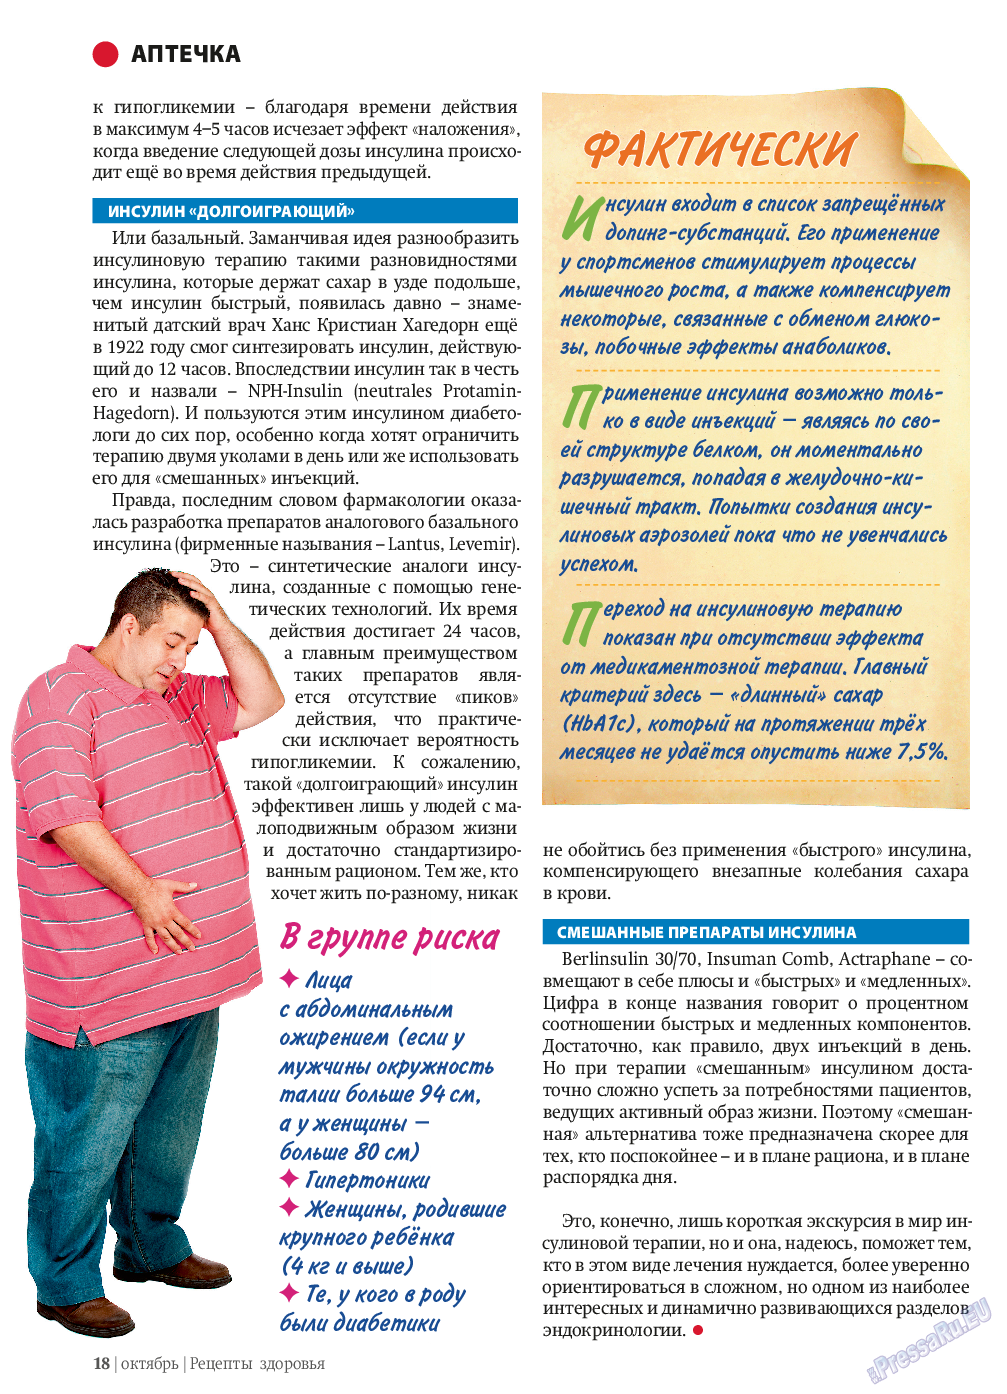 Рецепты здоровья, журнал. 2013 №10 стр.18